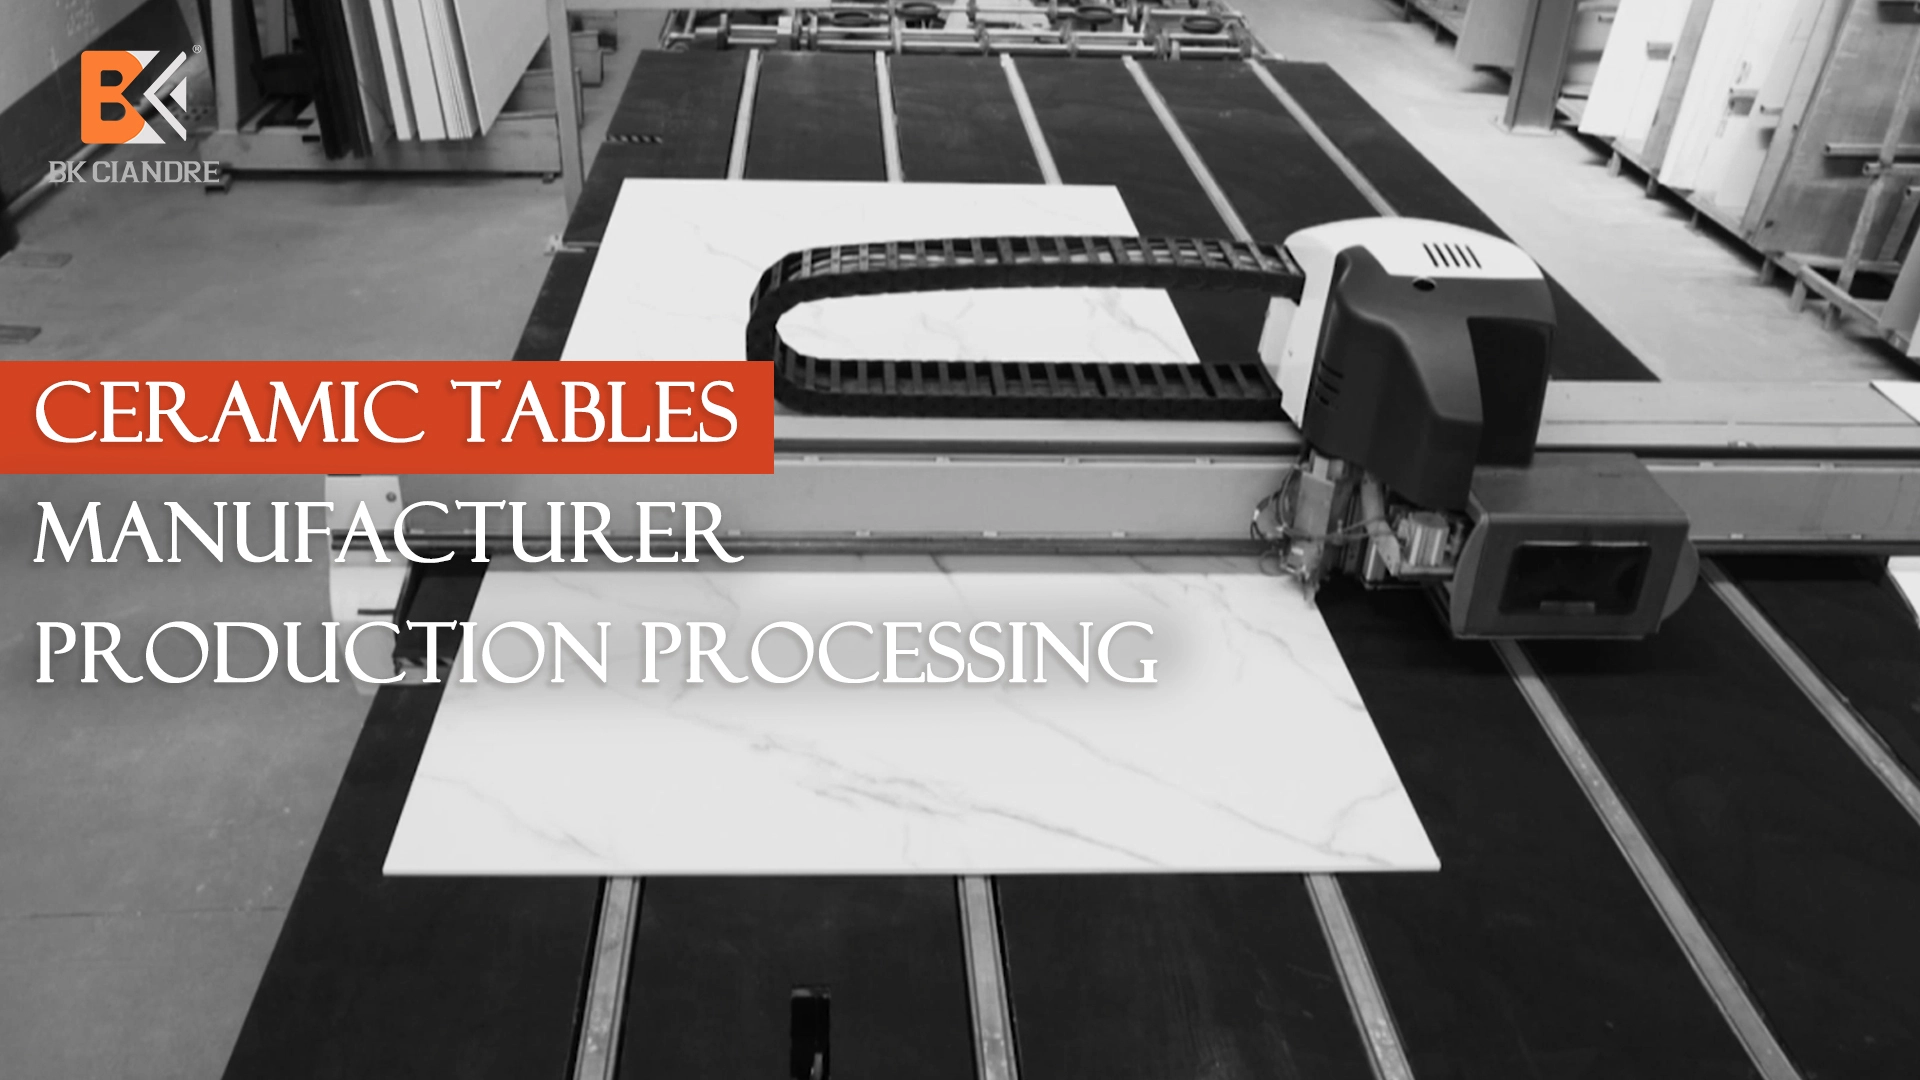 Keraamiset pöydät Valmistajan tuotannon käsittely